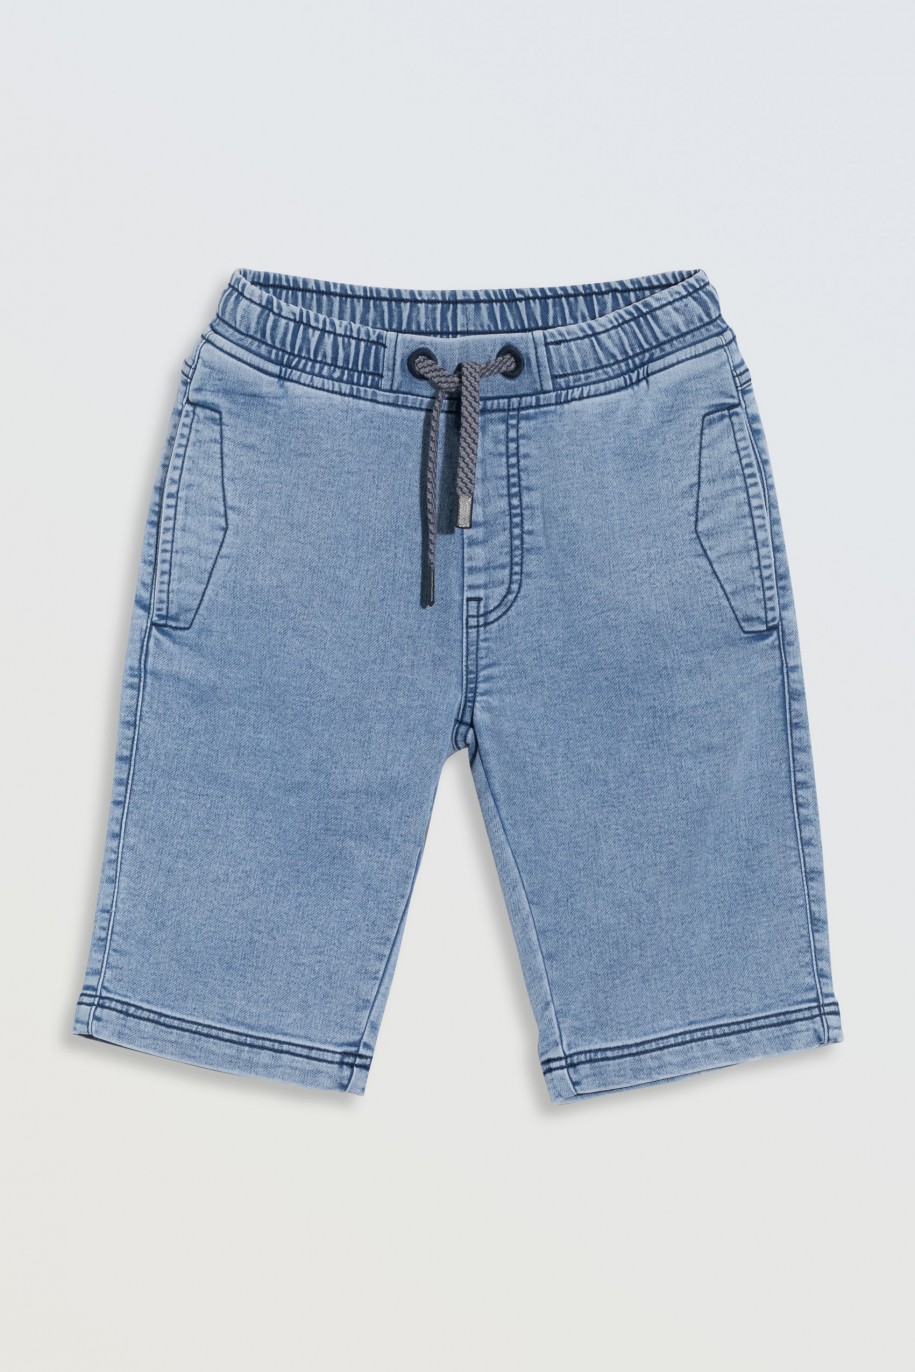 Niebieskie krótkie spodenki jeansowe z modnymi przeszyciami - 46771